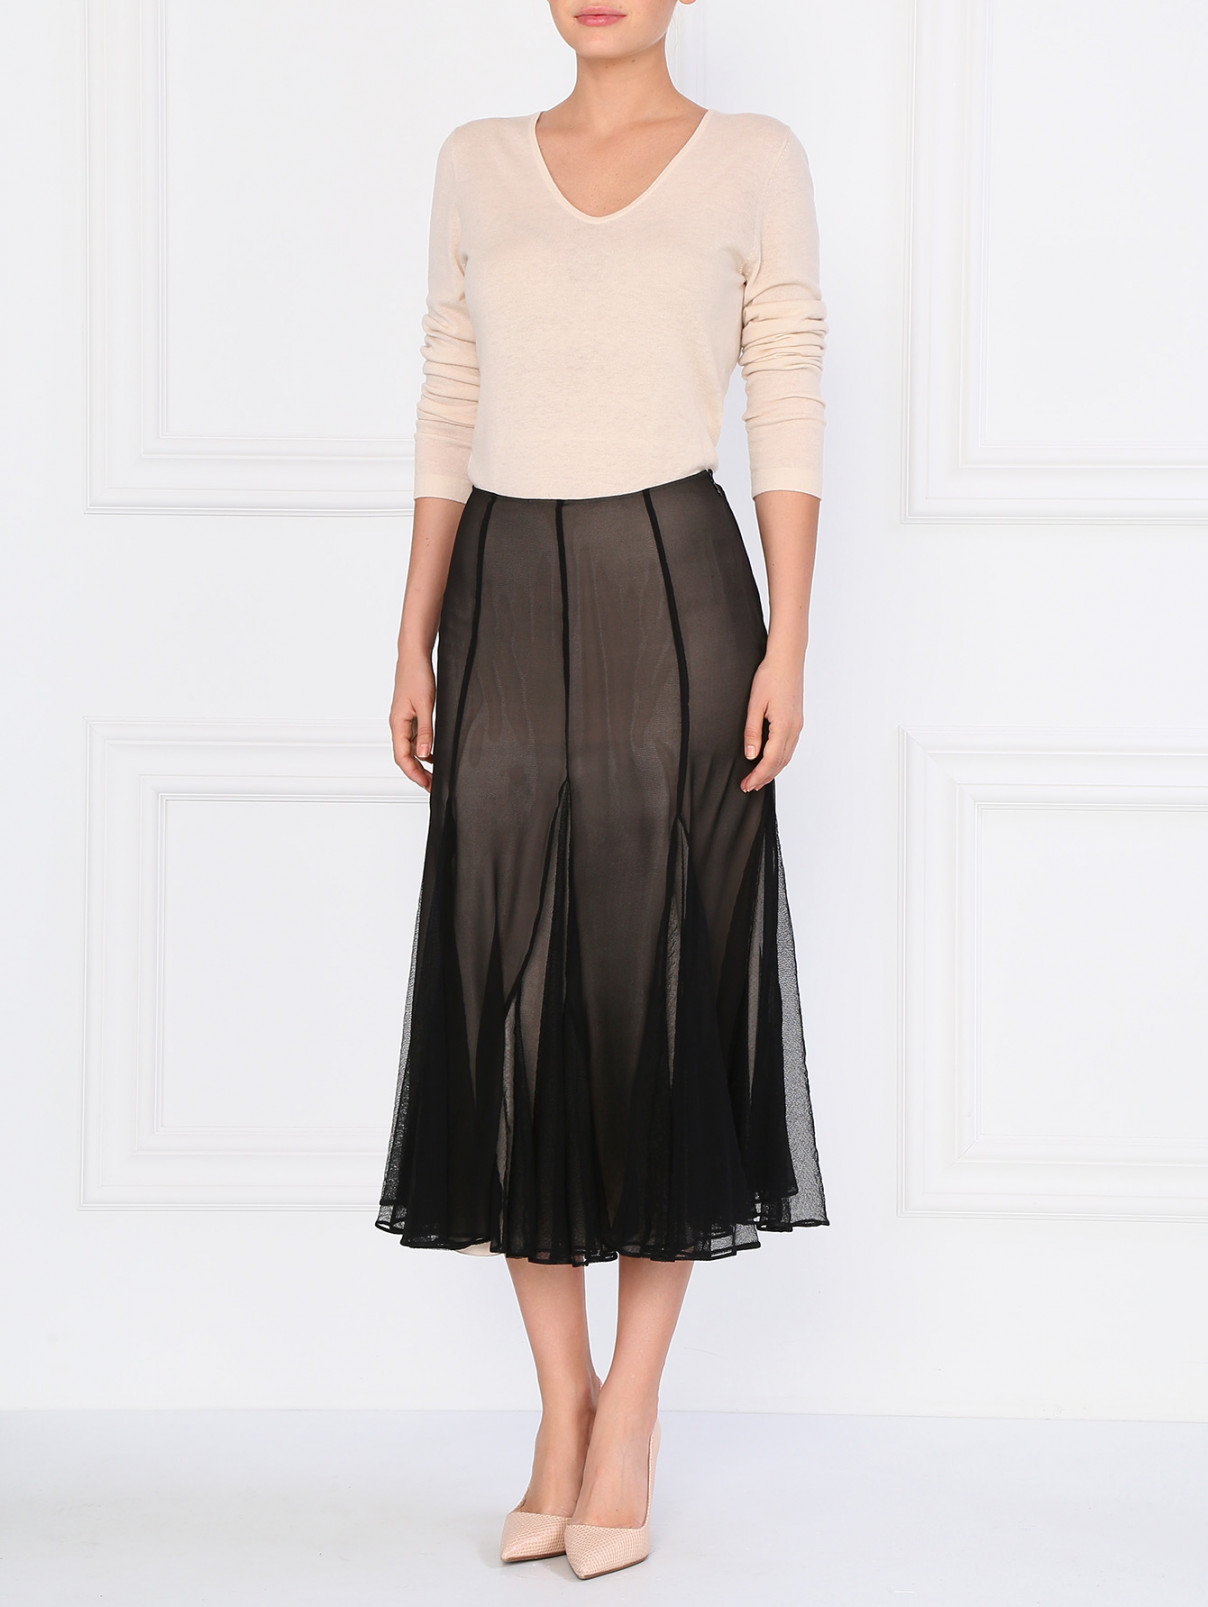 Шелковая юбка с клиньями из сетки Antonio Marras  –  Модель Общий вид  – Цвет:  Черный